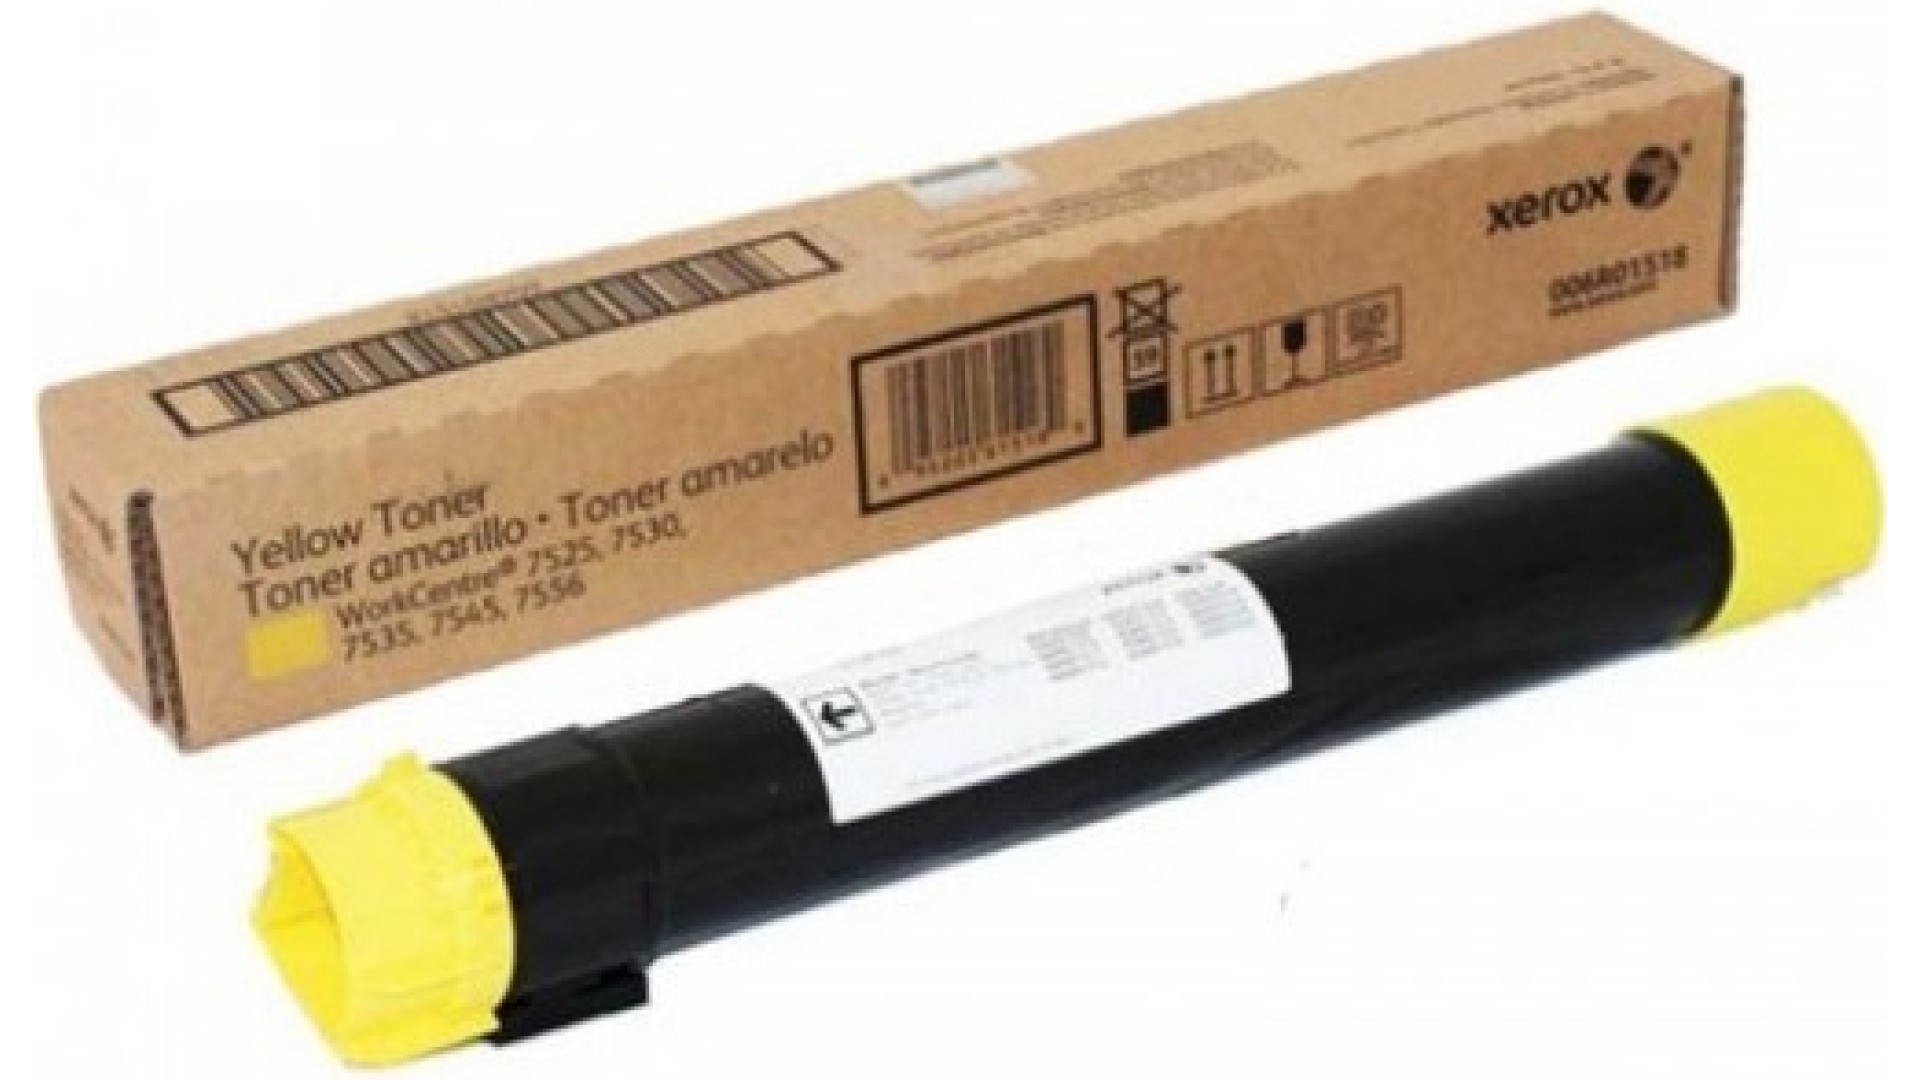 კარტრიჯი Xerox  006R01518 Toner Cartridge Yellow For WC7500/7800/7970 Series 7525/7530/7535/7545/7556, 7830/7835/7845/7855, 7970 (15000 Pages)